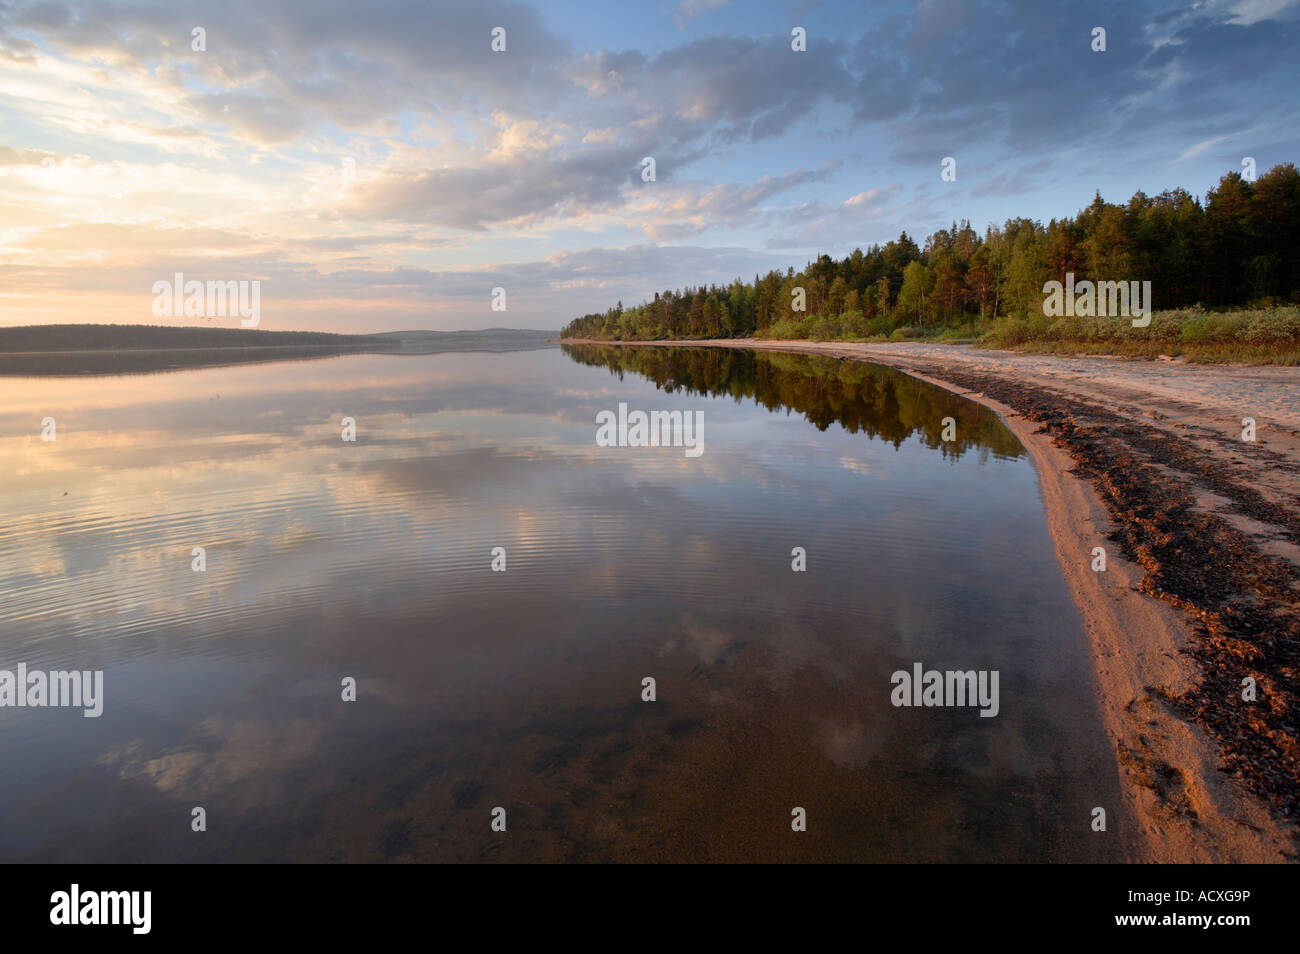 Sandy lake shore and forest at Pallasjärvi, Kittilä, Lapland, Finland Stock Photo